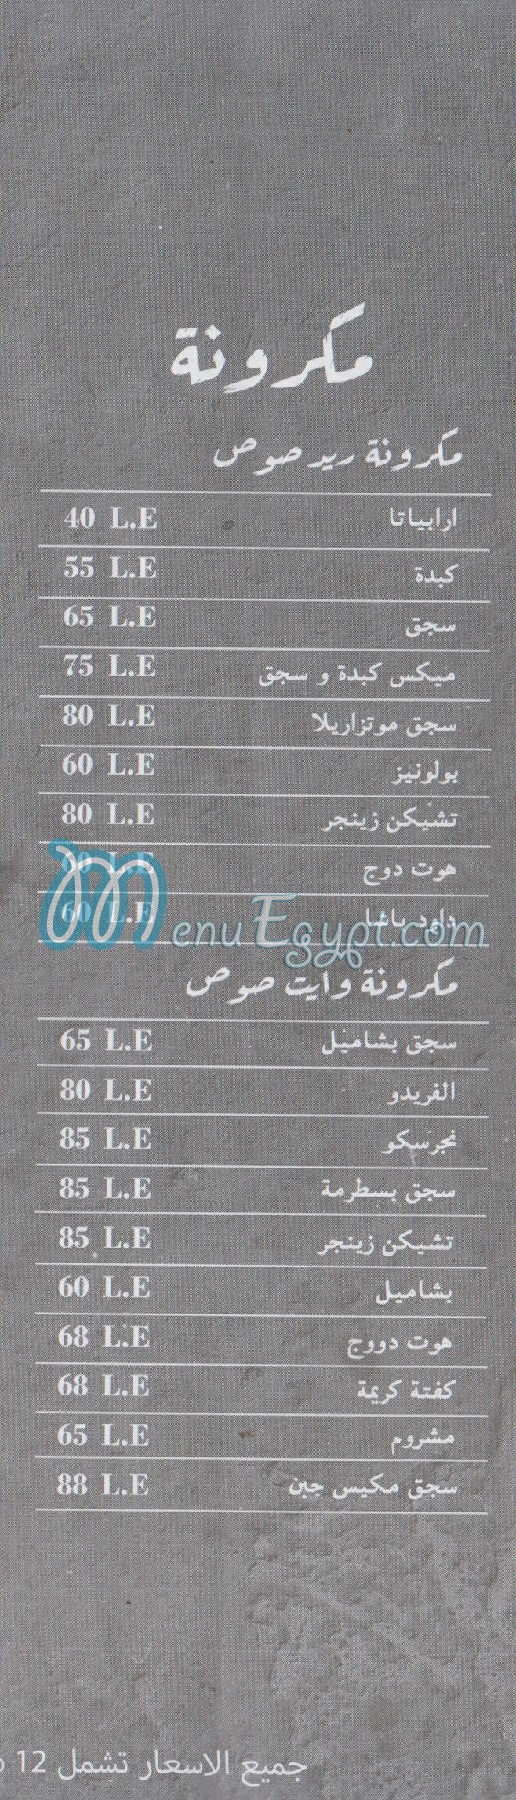 Bab El Hadid menu Egypt 5